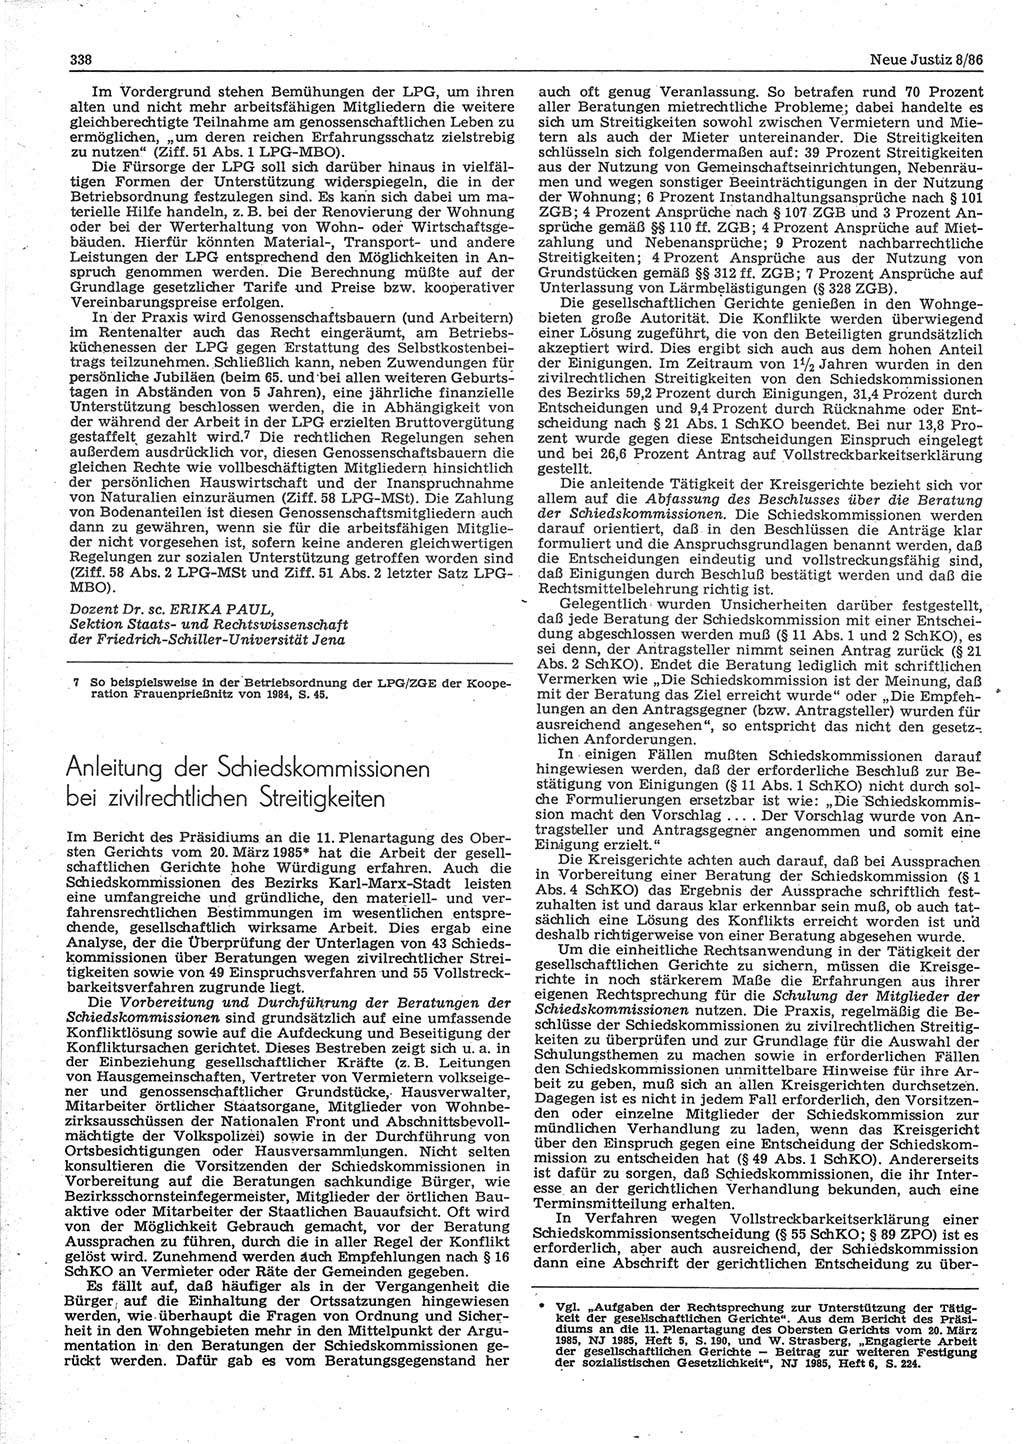 Neue Justiz (NJ), Zeitschrift für sozialistisches Recht und Gesetzlichkeit [Deutsche Demokratische Republik (DDR)], 40. Jahrgang 1986, Seite 338 (NJ DDR 1986, S. 338)